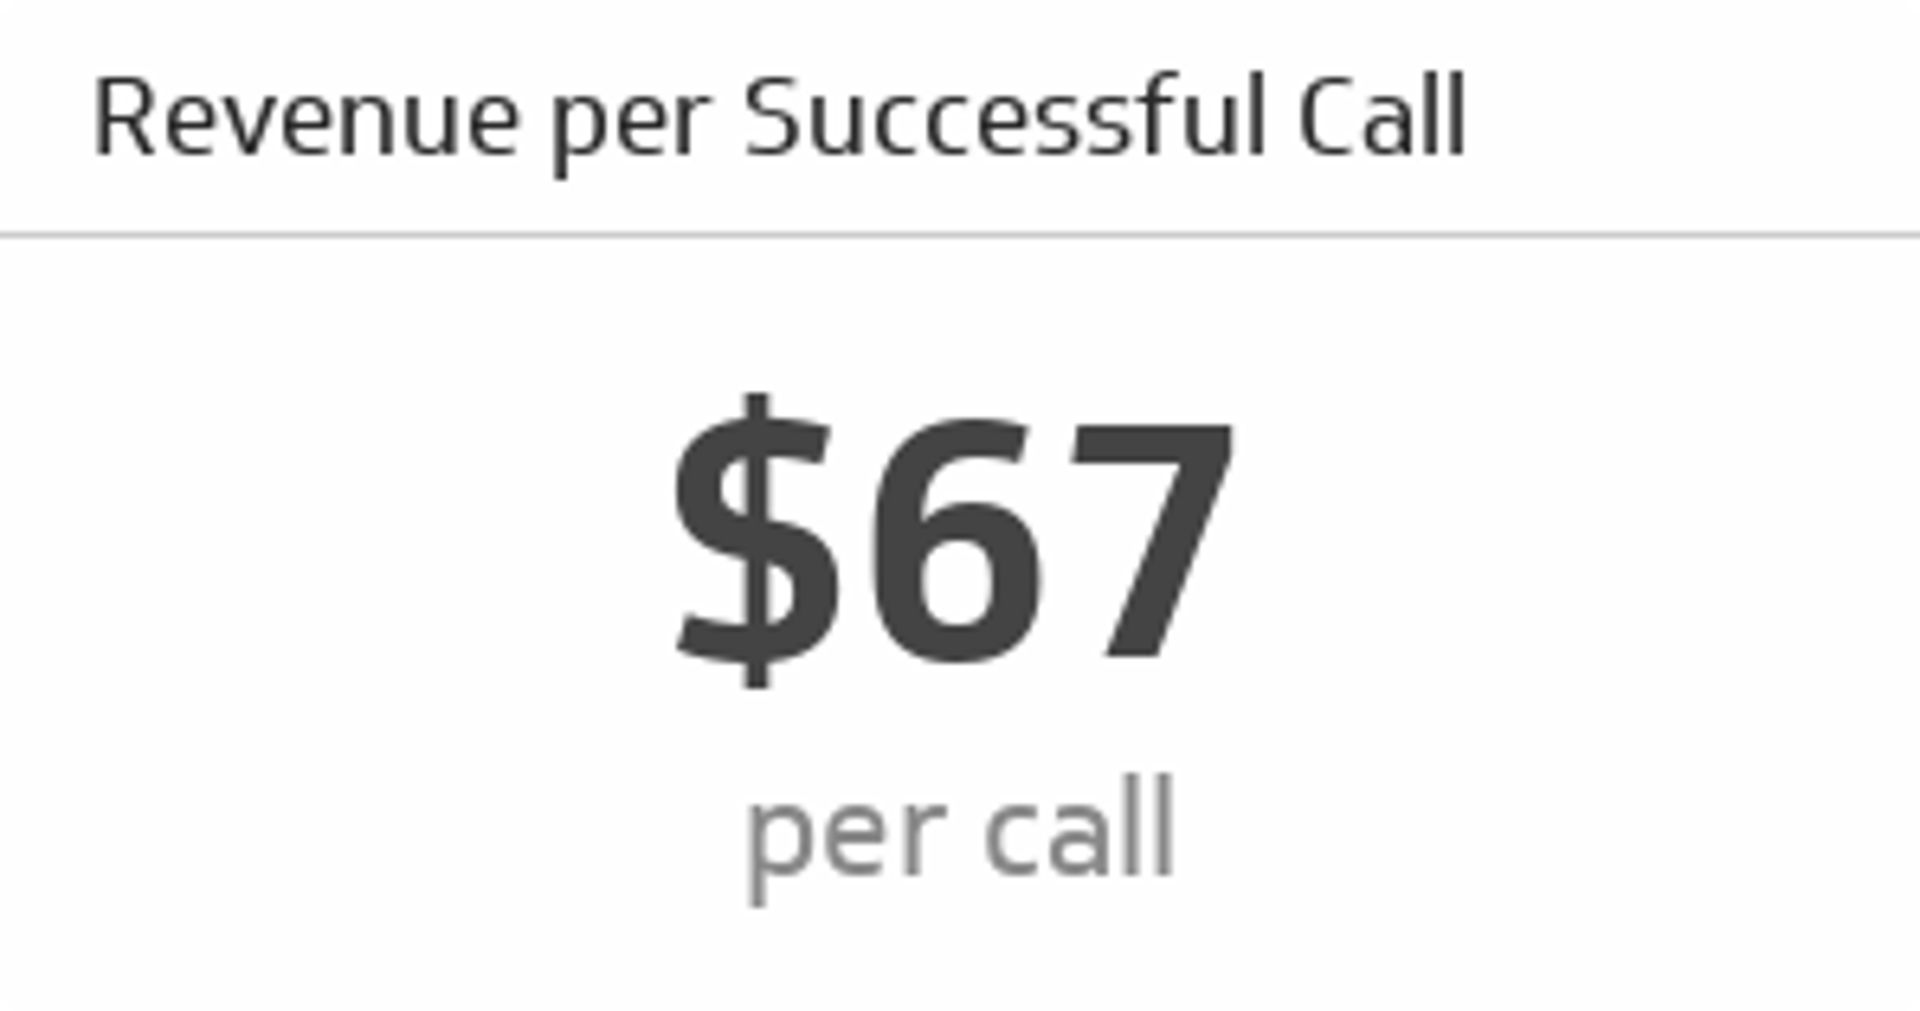 Revenue Per Successful Call